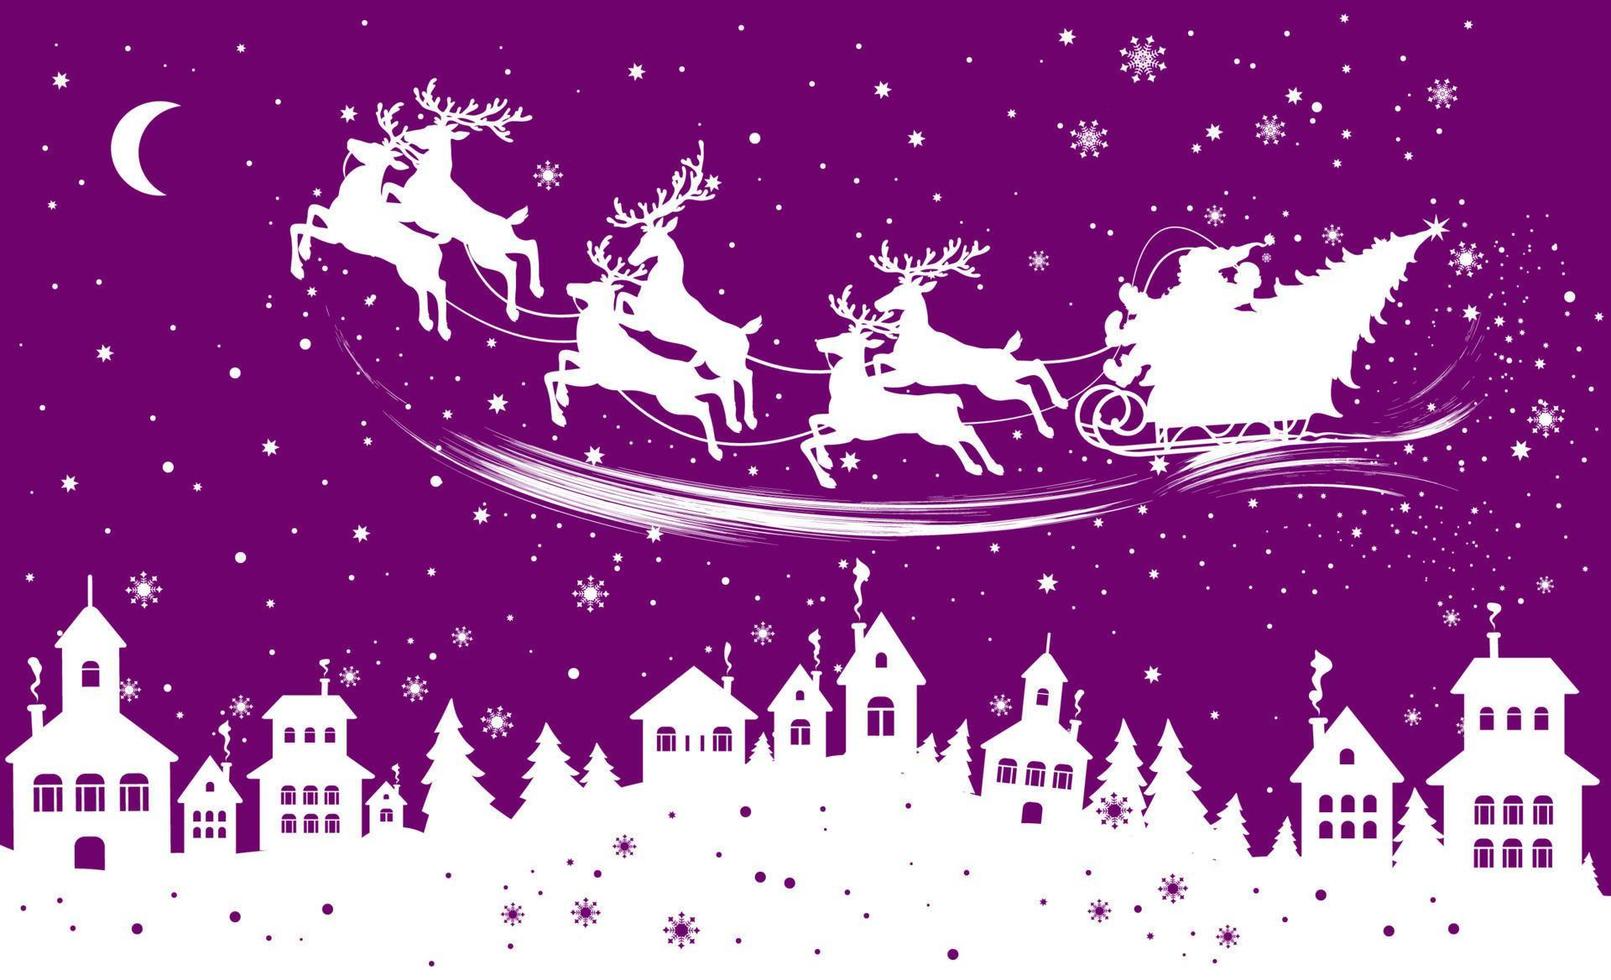 Natale illustrazione con case, Santa Claus su renna e fiocchi di neve. vettore